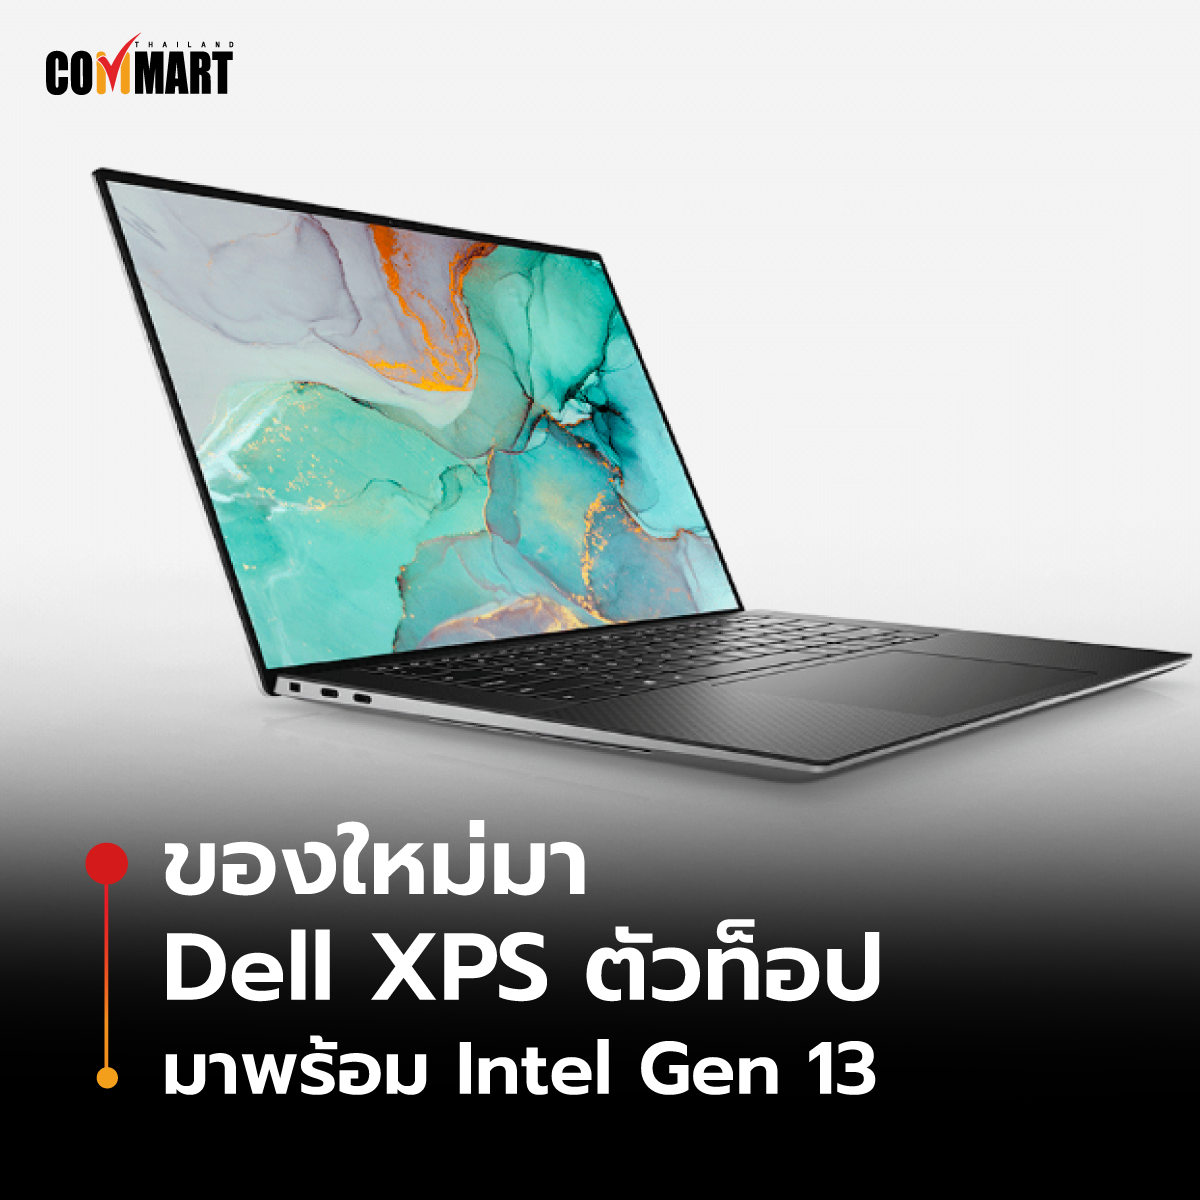 ของใหม่มา Dell XPS ตัวท็อป มาพร้อม Intel Gen 13